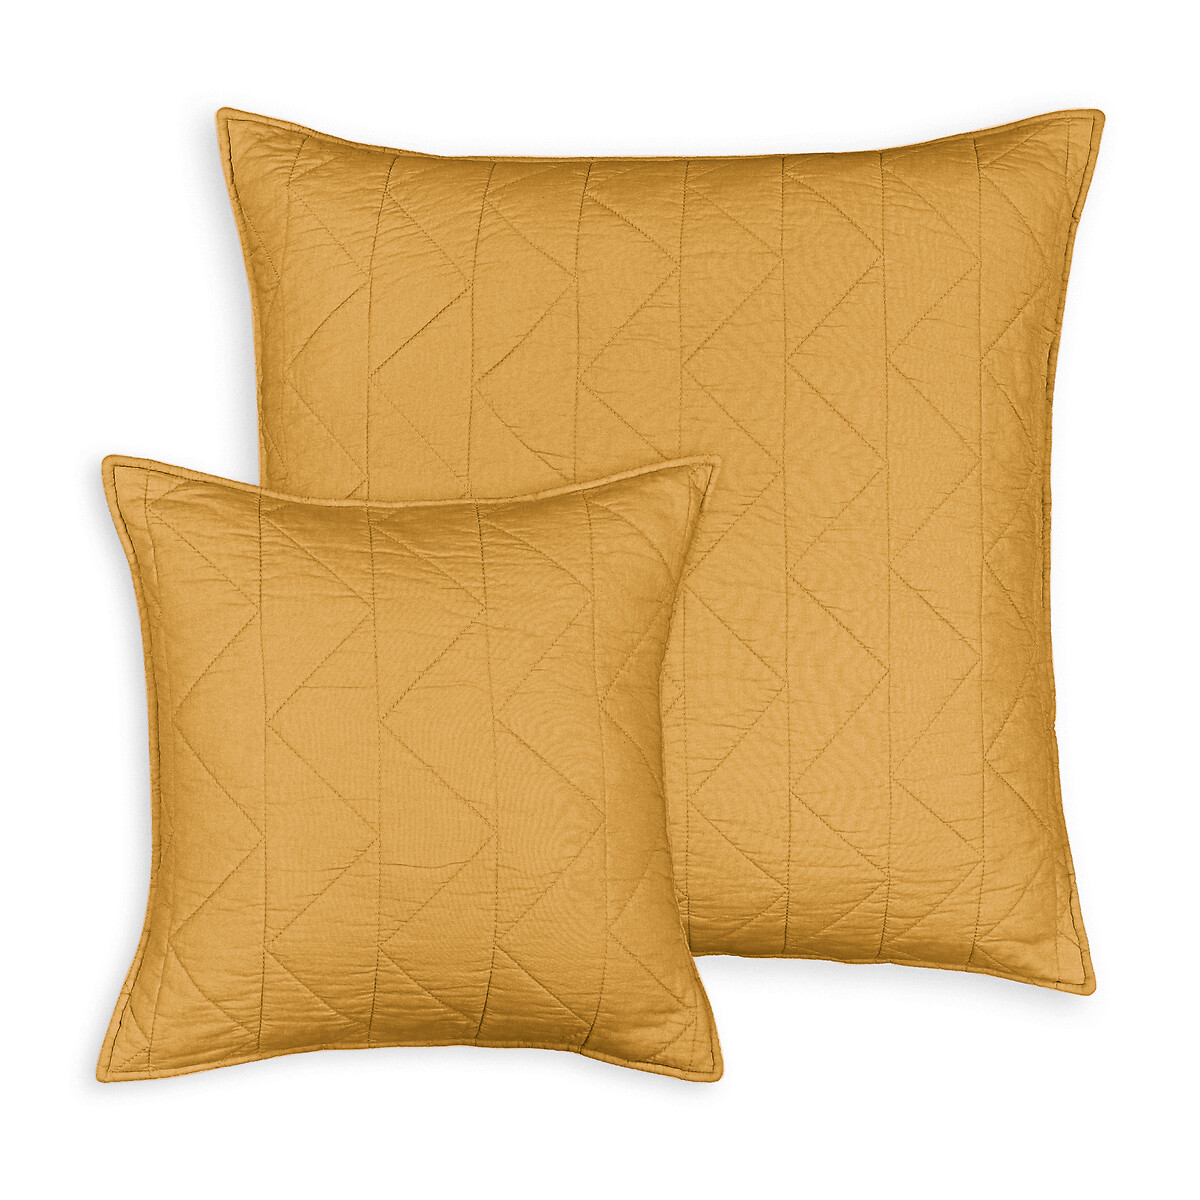 Чехол La Redoute На подушку  наволочка Zig-zag 40 x 40 см желтый, размер 40 x 40 см - фото 1